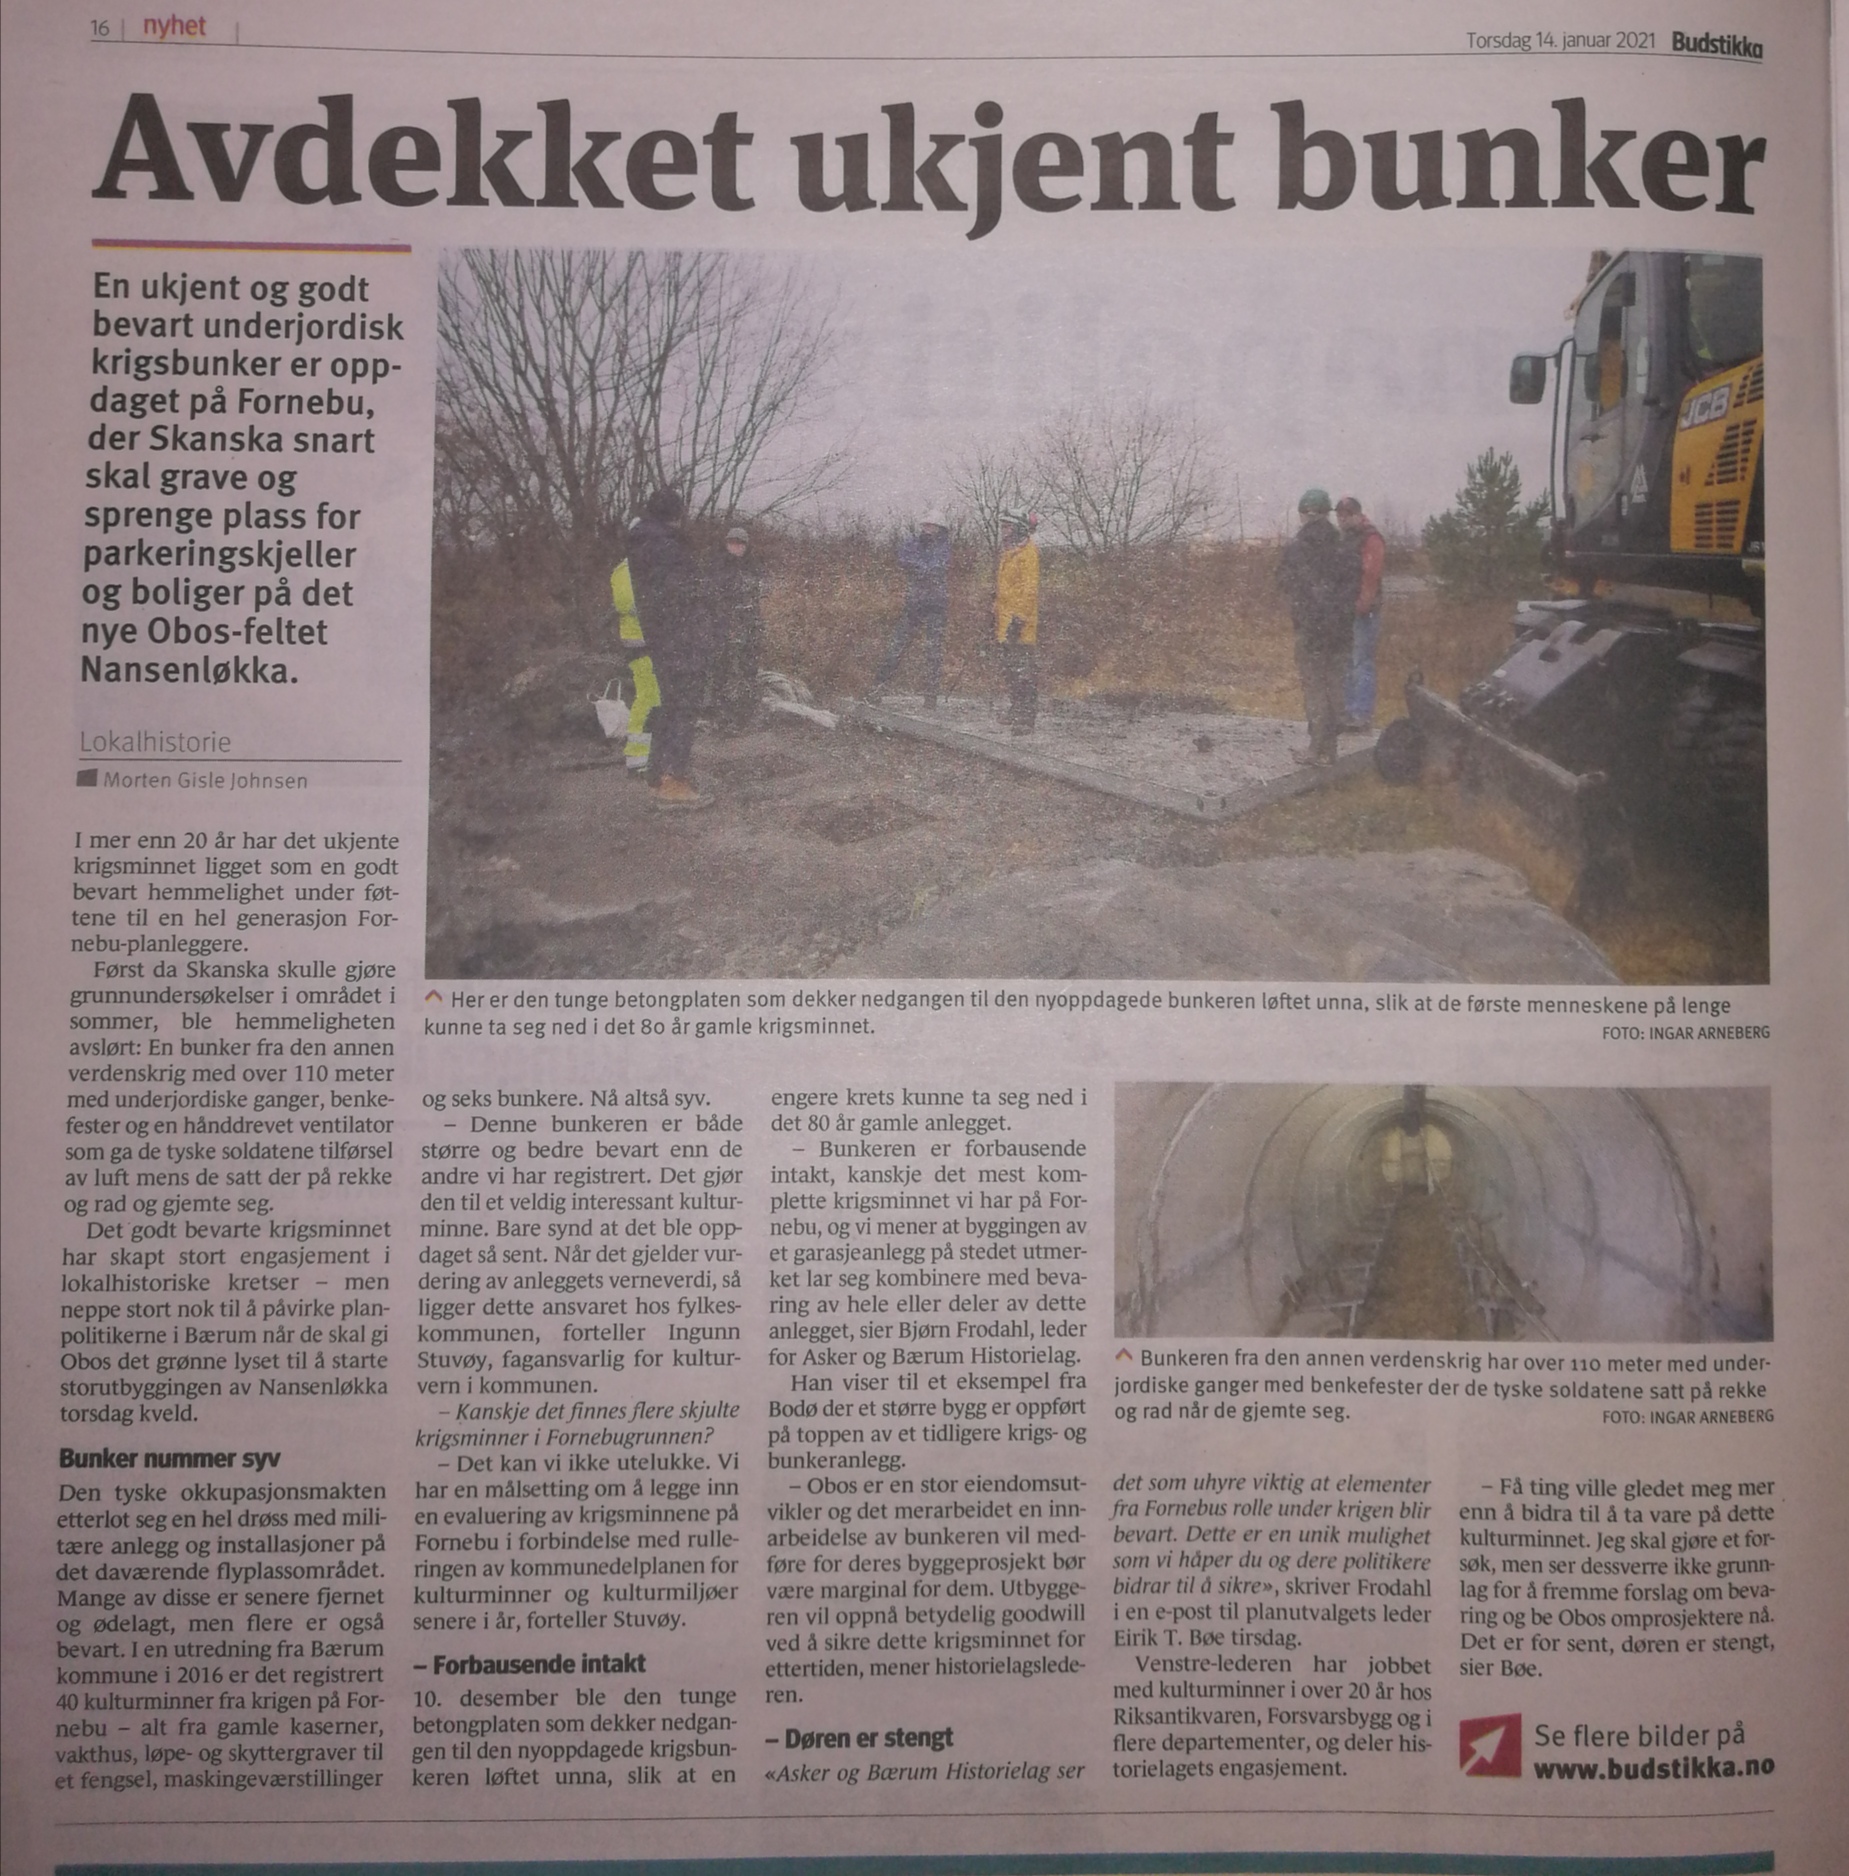 Ny stor bunker oppdaget på Fornebu. (Budstikka 14.01.21.